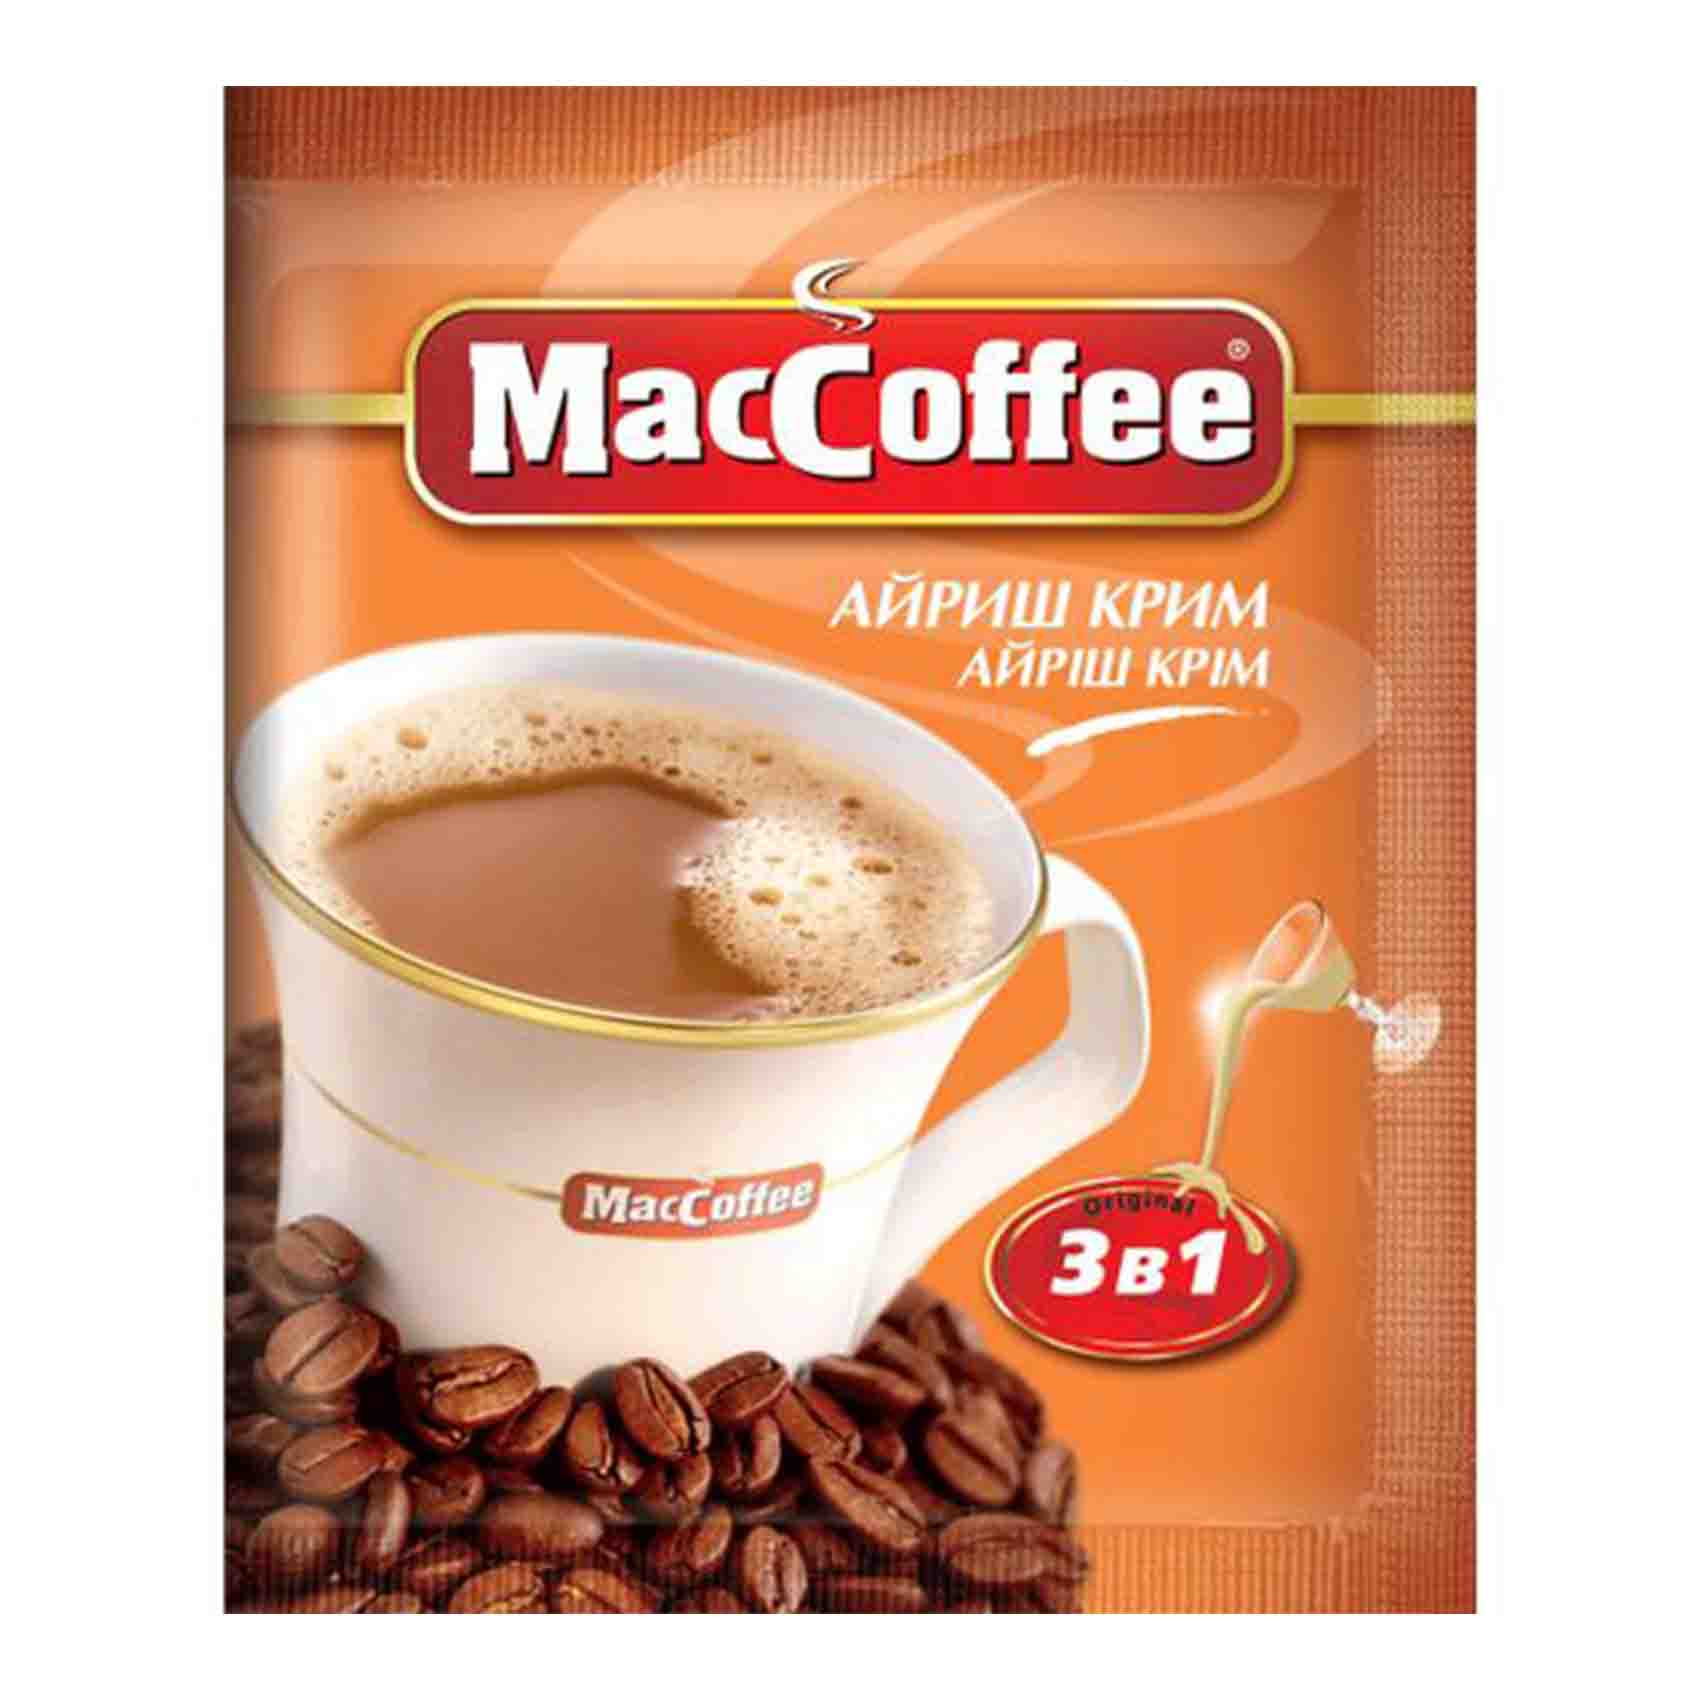 MacCoffee 3 In 1 Irish Cream Coffee 18g